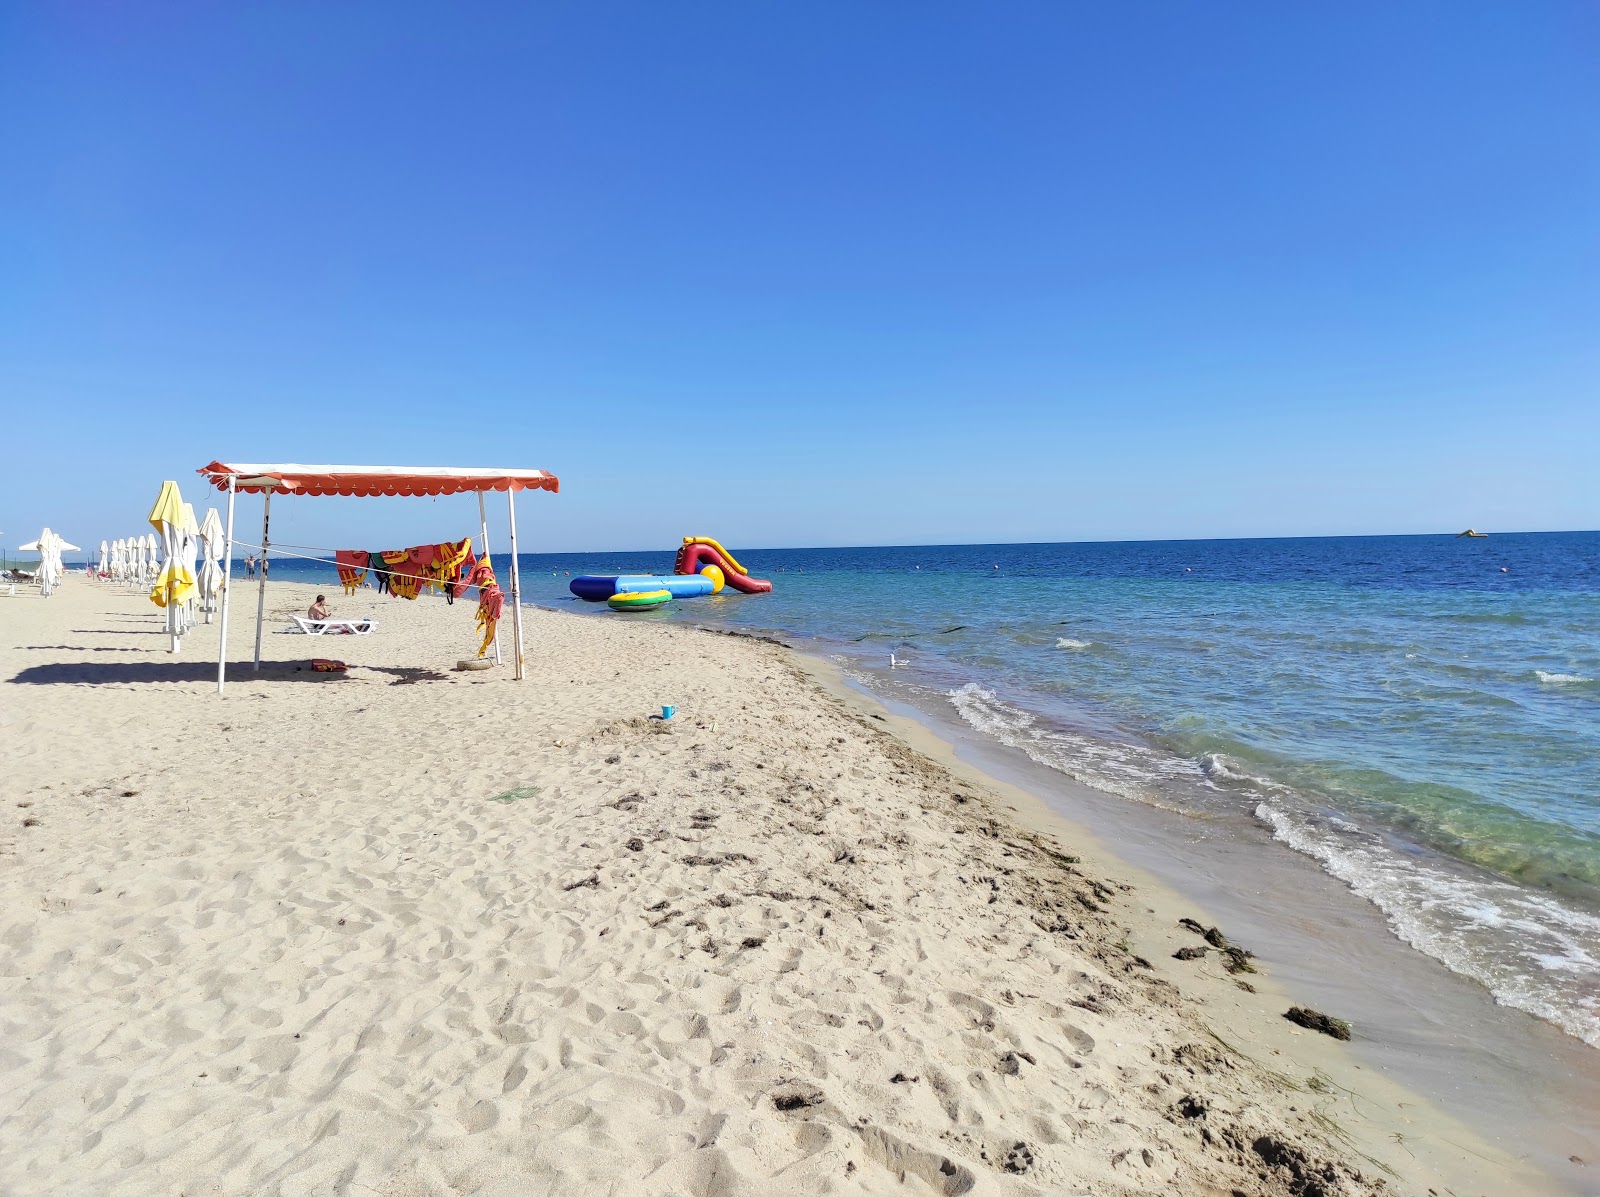 Tok Evpatoria beach'in fotoğrafı parlak ince kum yüzey ile